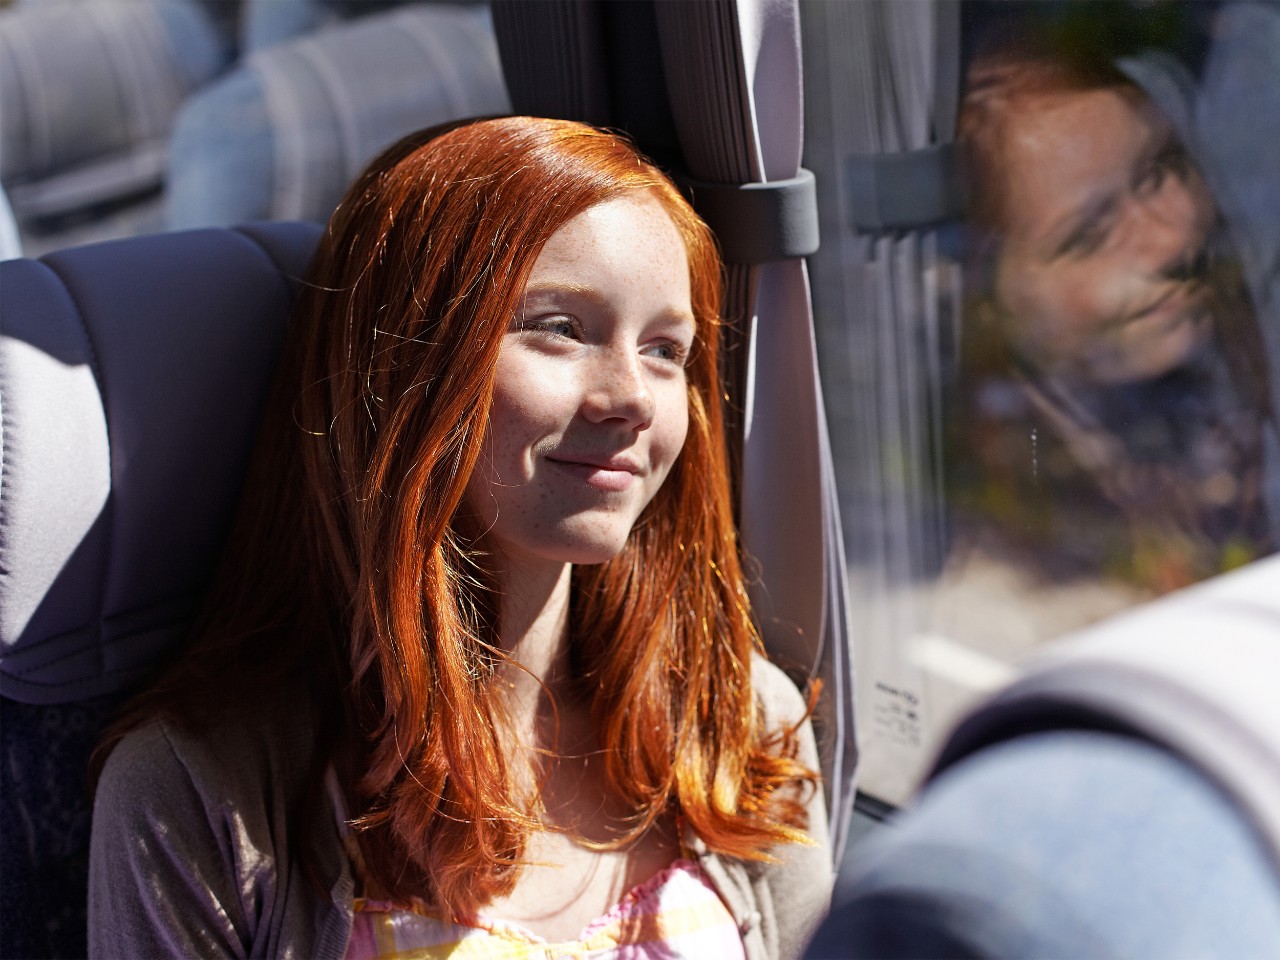  Girl on a Scania bus